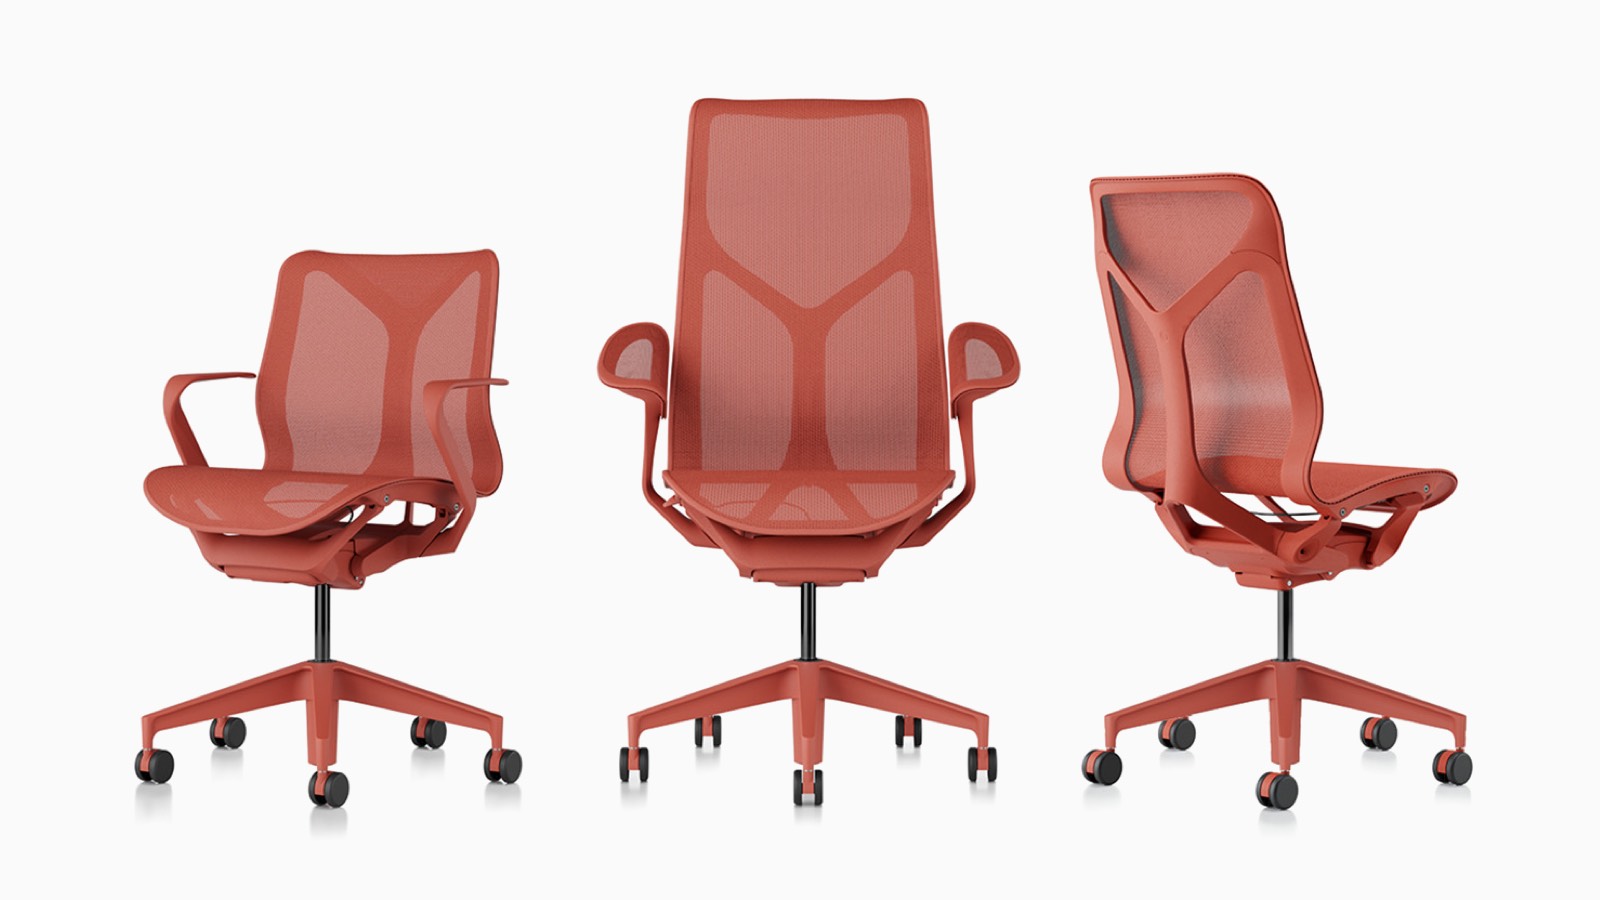 Cadeiras de mesa ergonômicas Low-back, high-back e mid-back Cosm com materiais de suspensão, bases e estruturas em vermelho Canyon.